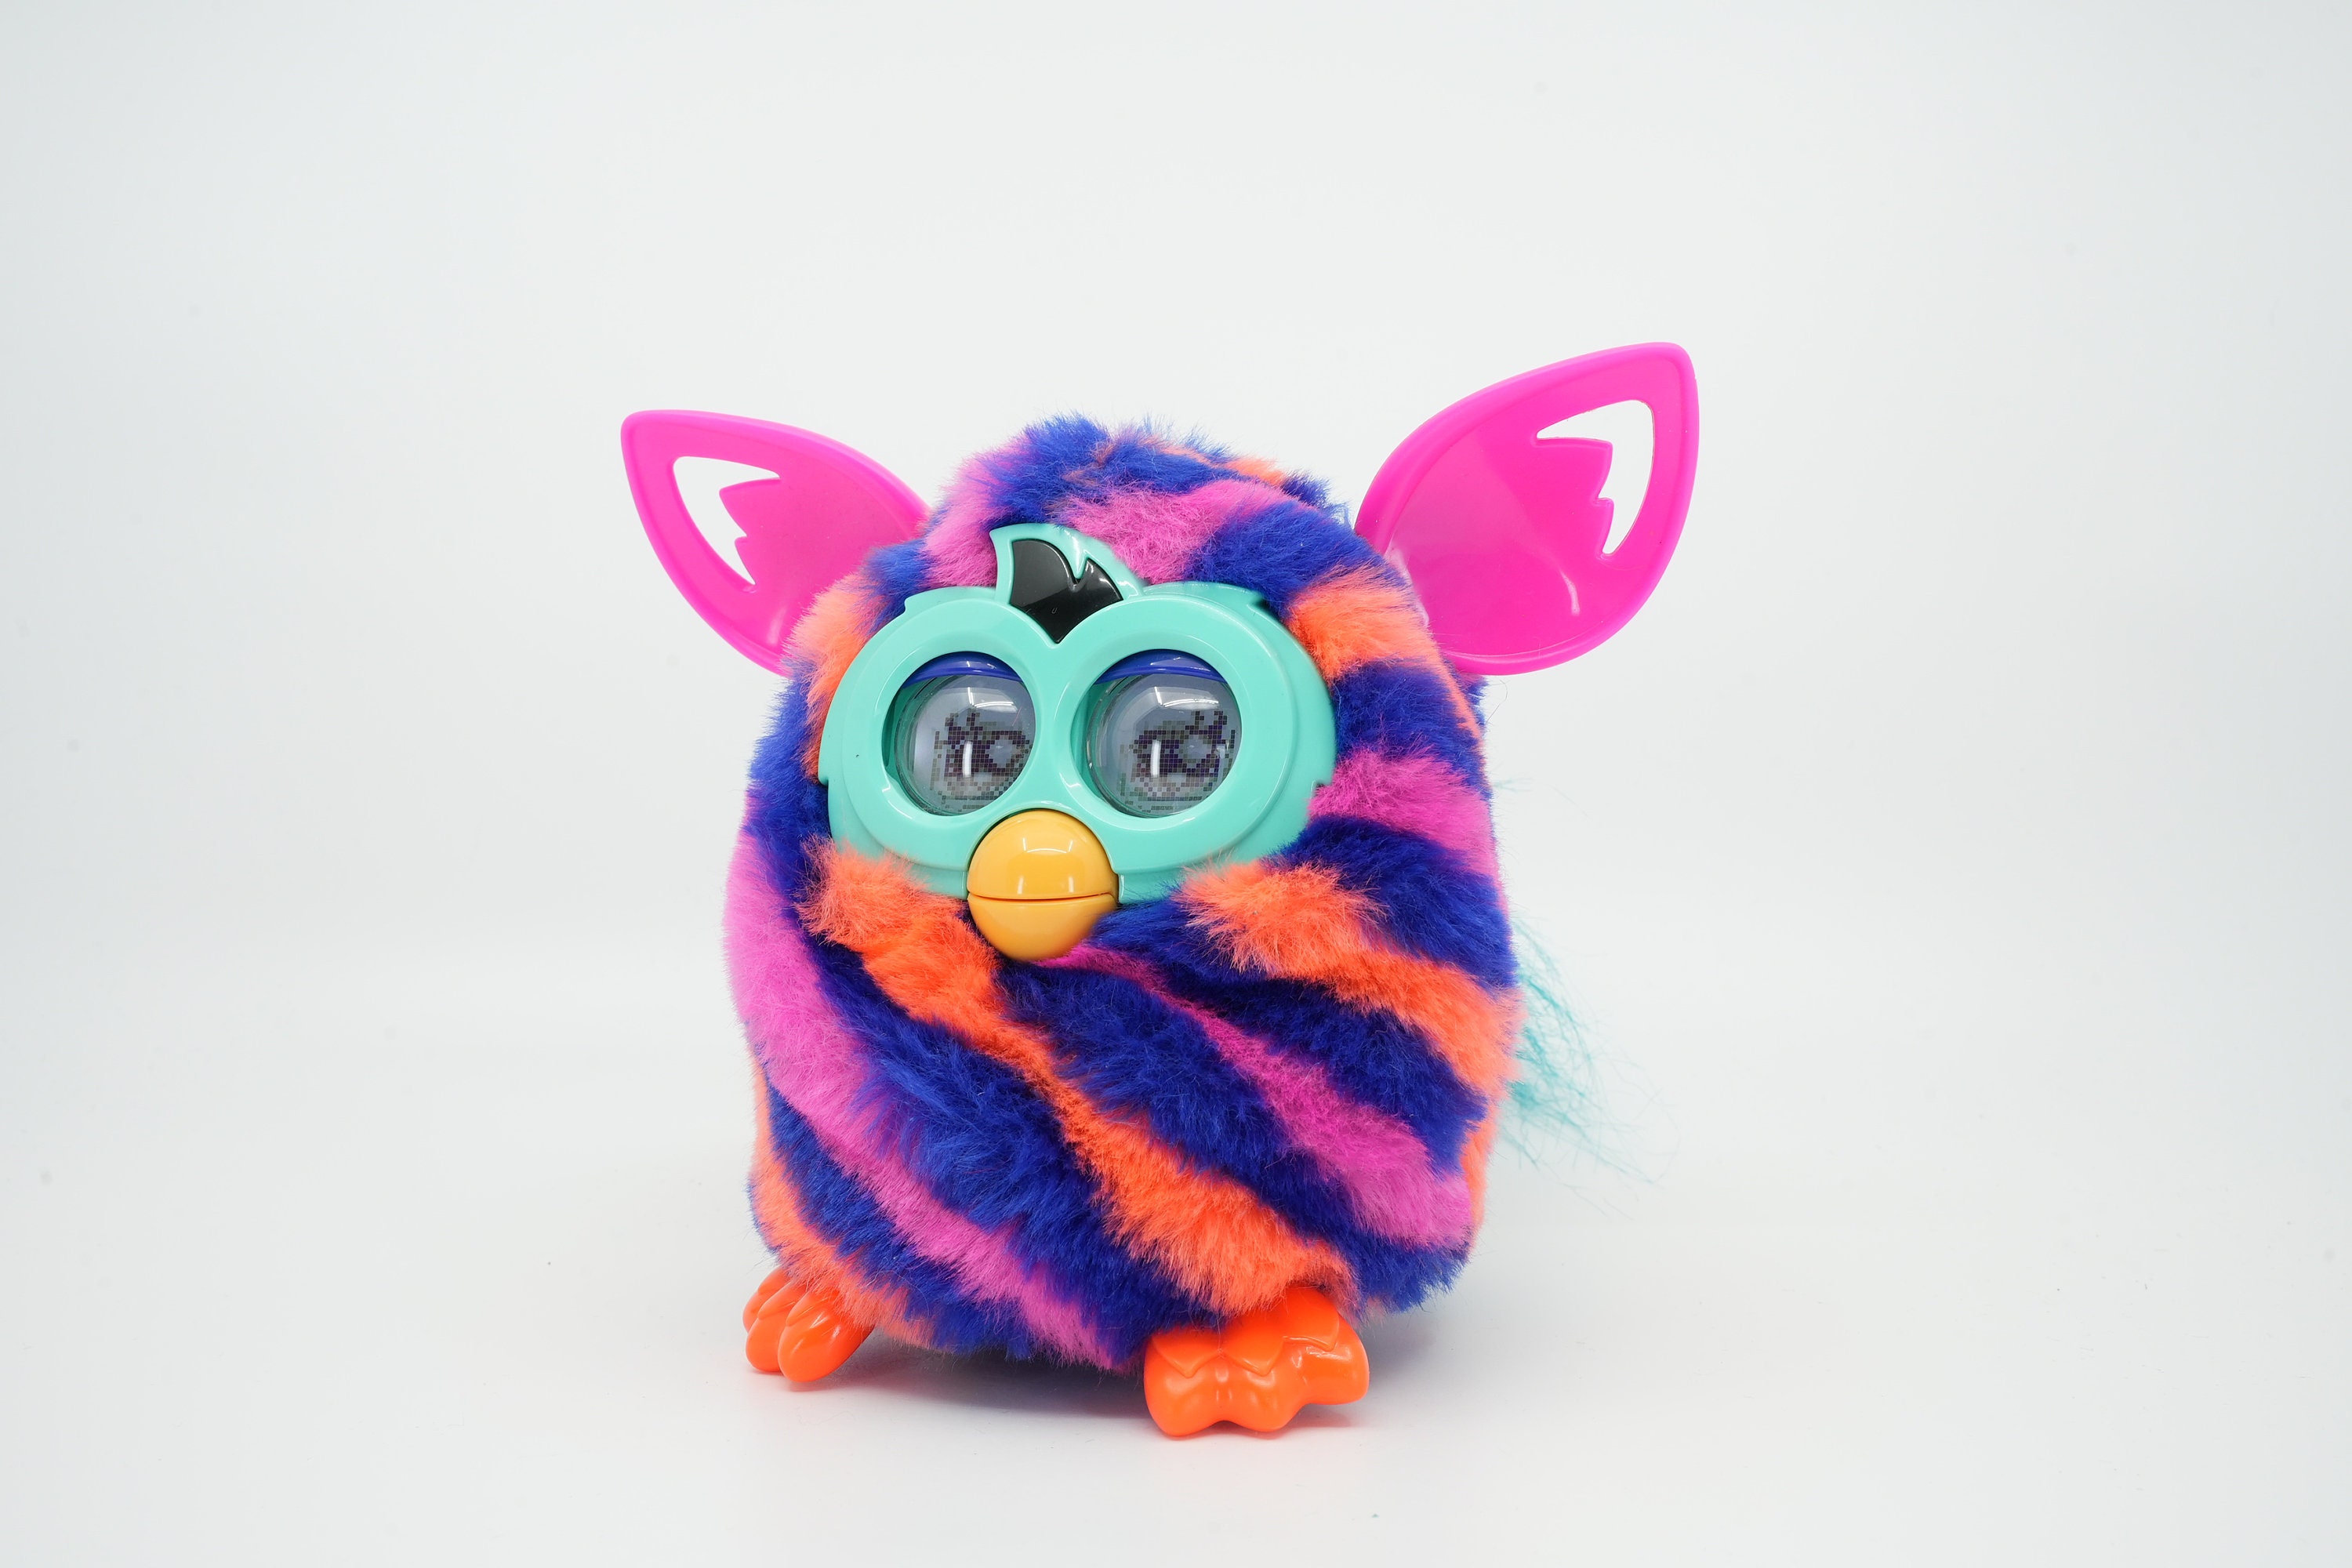 Jouets électroniques interactifs Furby Boom Furby bleu violet moelleux avec  pieds violets Parle espagnol -  France